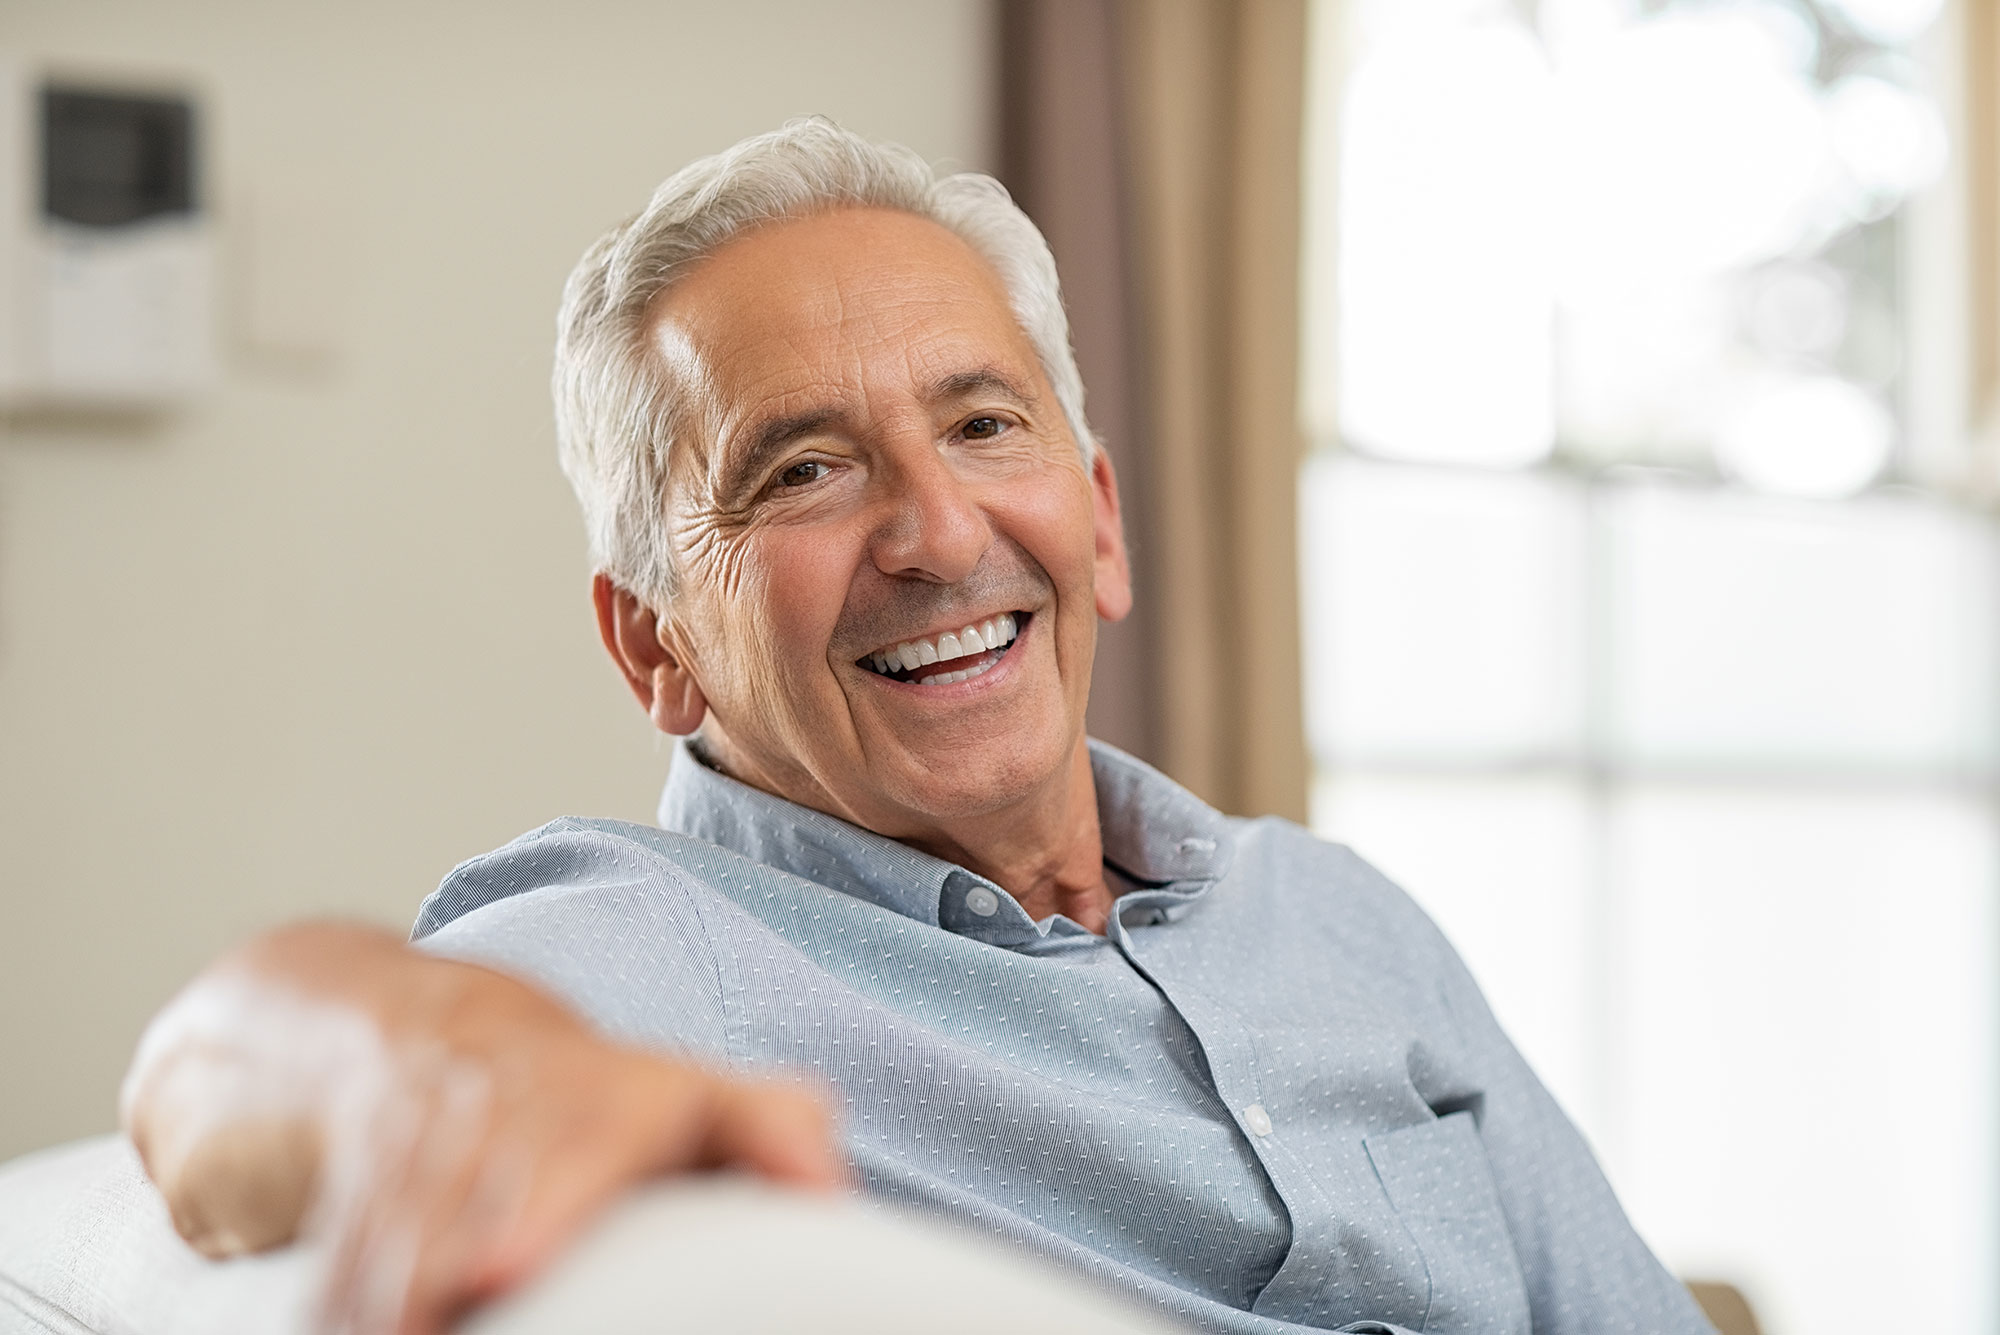 Senior man smiling at home 7bcu8e6 1